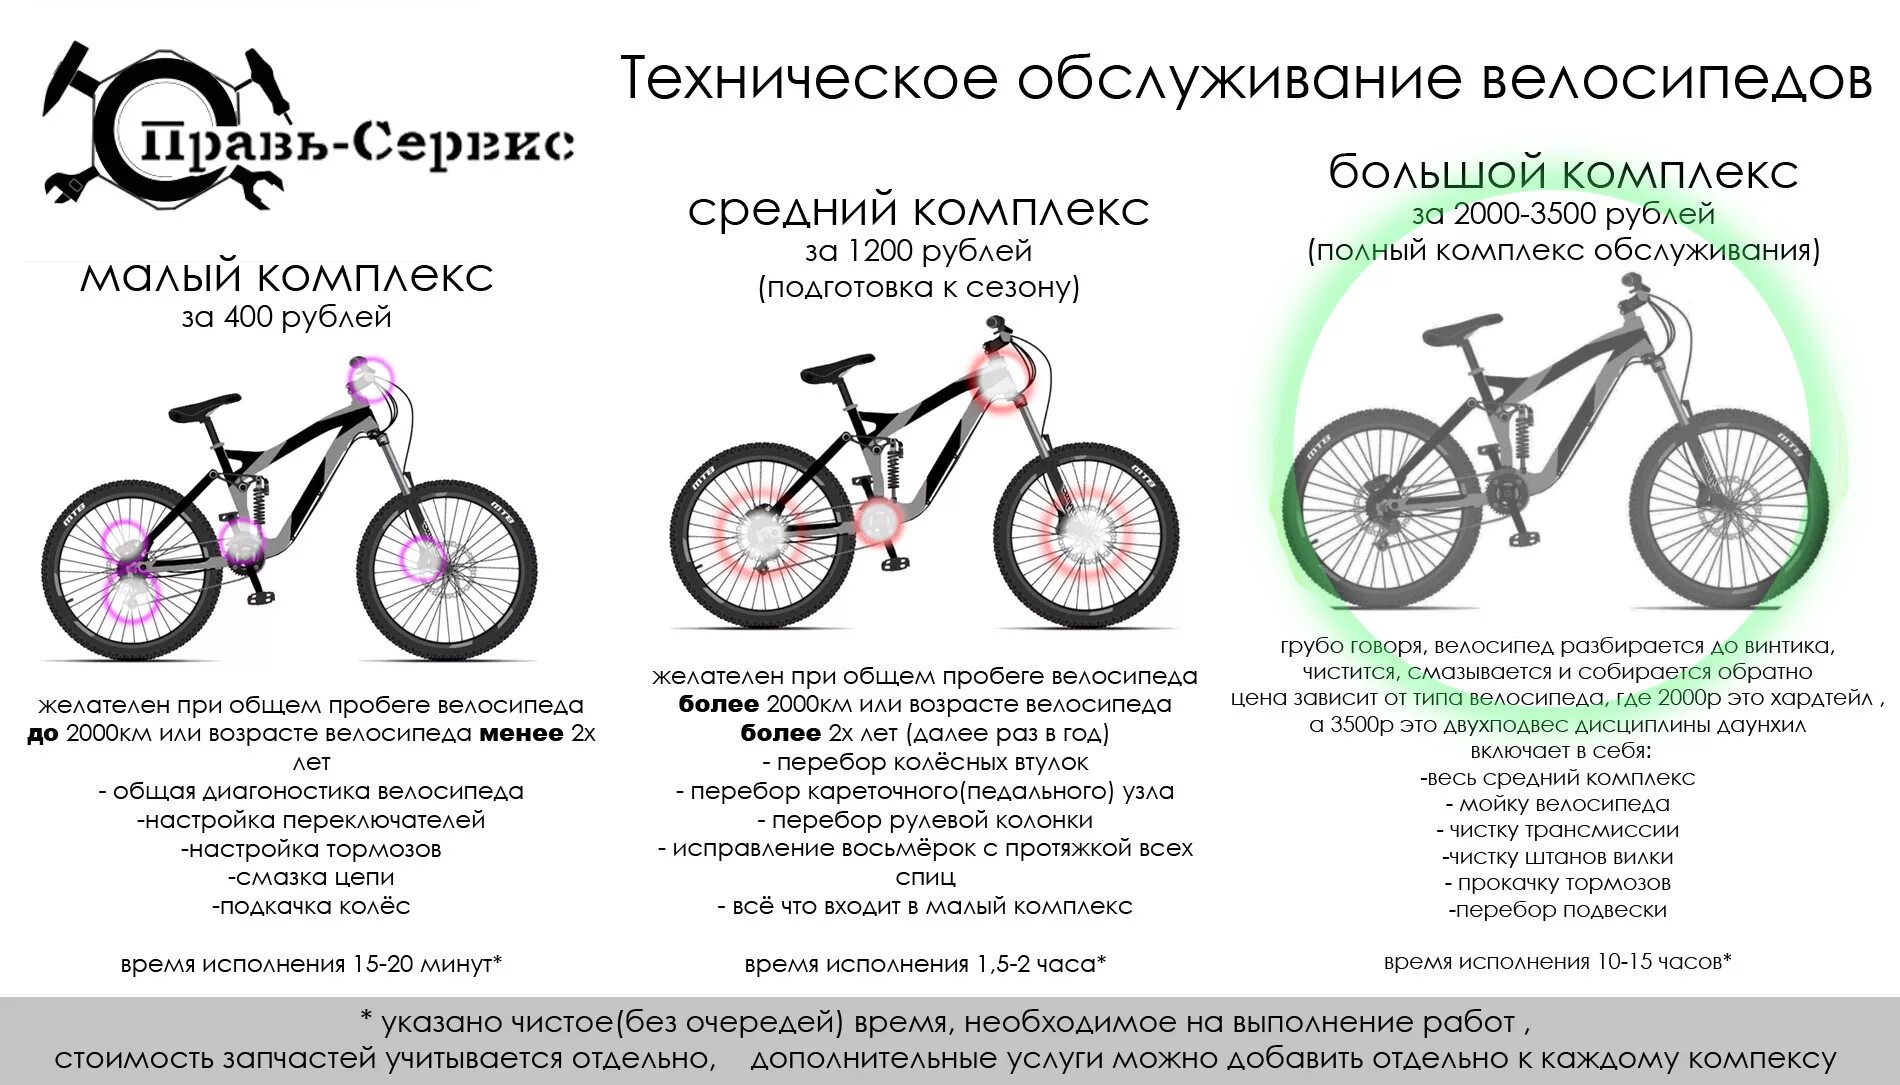 Можно ли вернуть велосипед в магазин. Техническое обслуживание велосипеда. Велосипеды спецификация колес велосипеда. Прайс на ремонт велосипедов. Характеристика велосипеда.